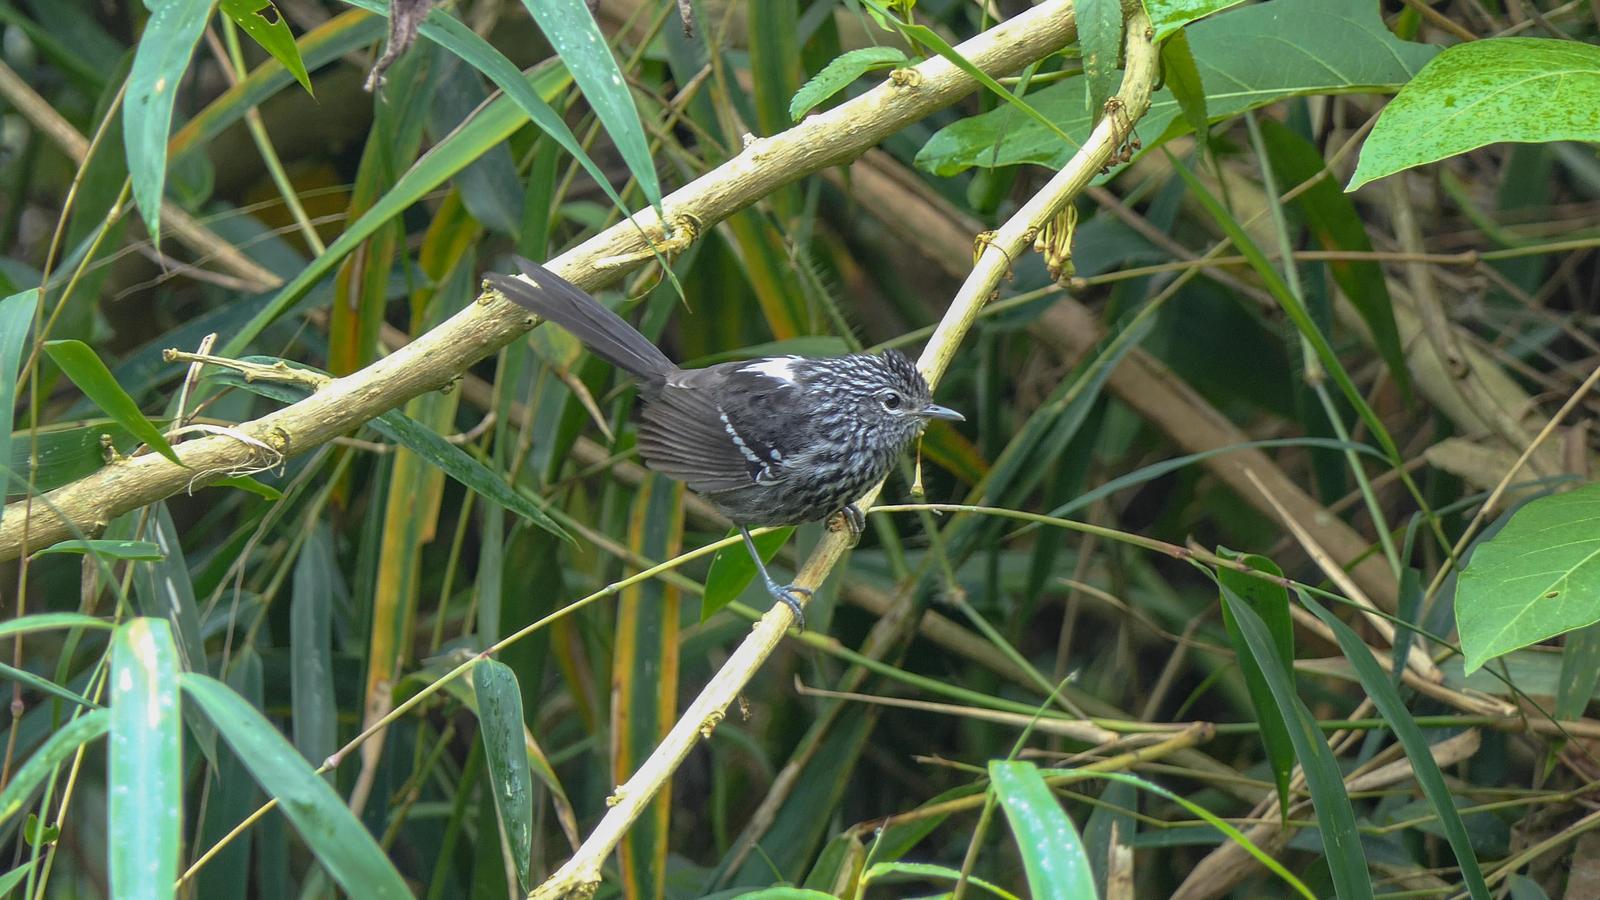 Dusky-tailed Antbird Photo by Randy Siebert